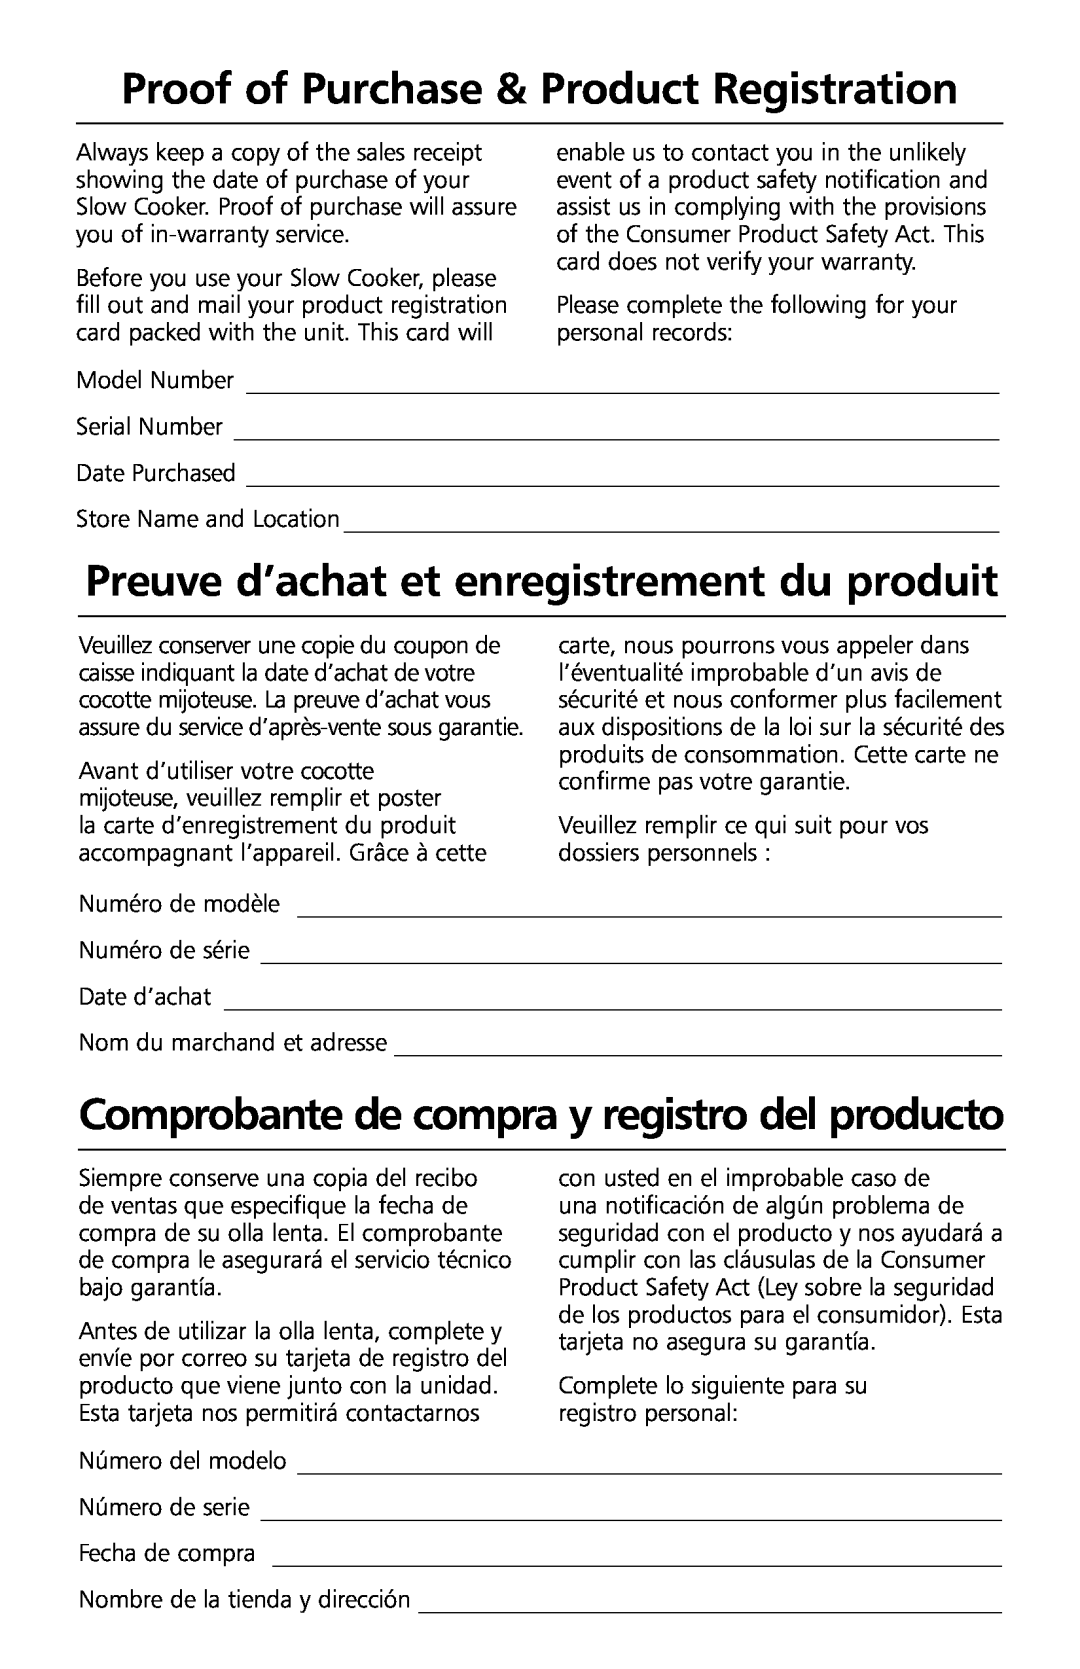 KitchenAid KSC700 manual Proof of Purchase & Product Registration, Preuve d’achat et enregistrement du produit 